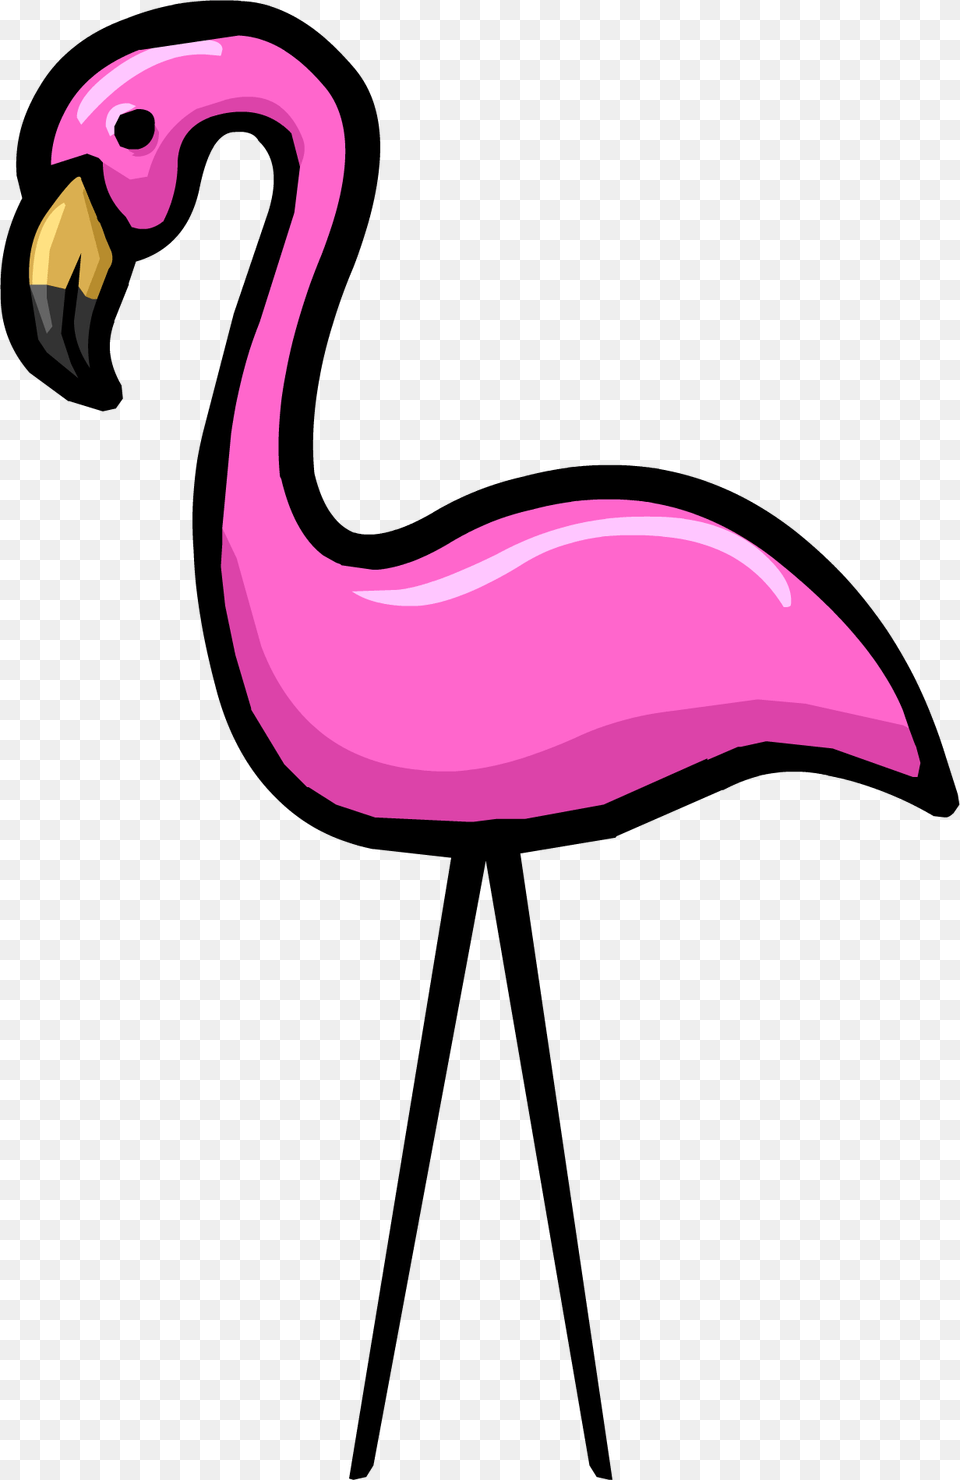 Animal, Beak, Bird, Flamingo Png Image